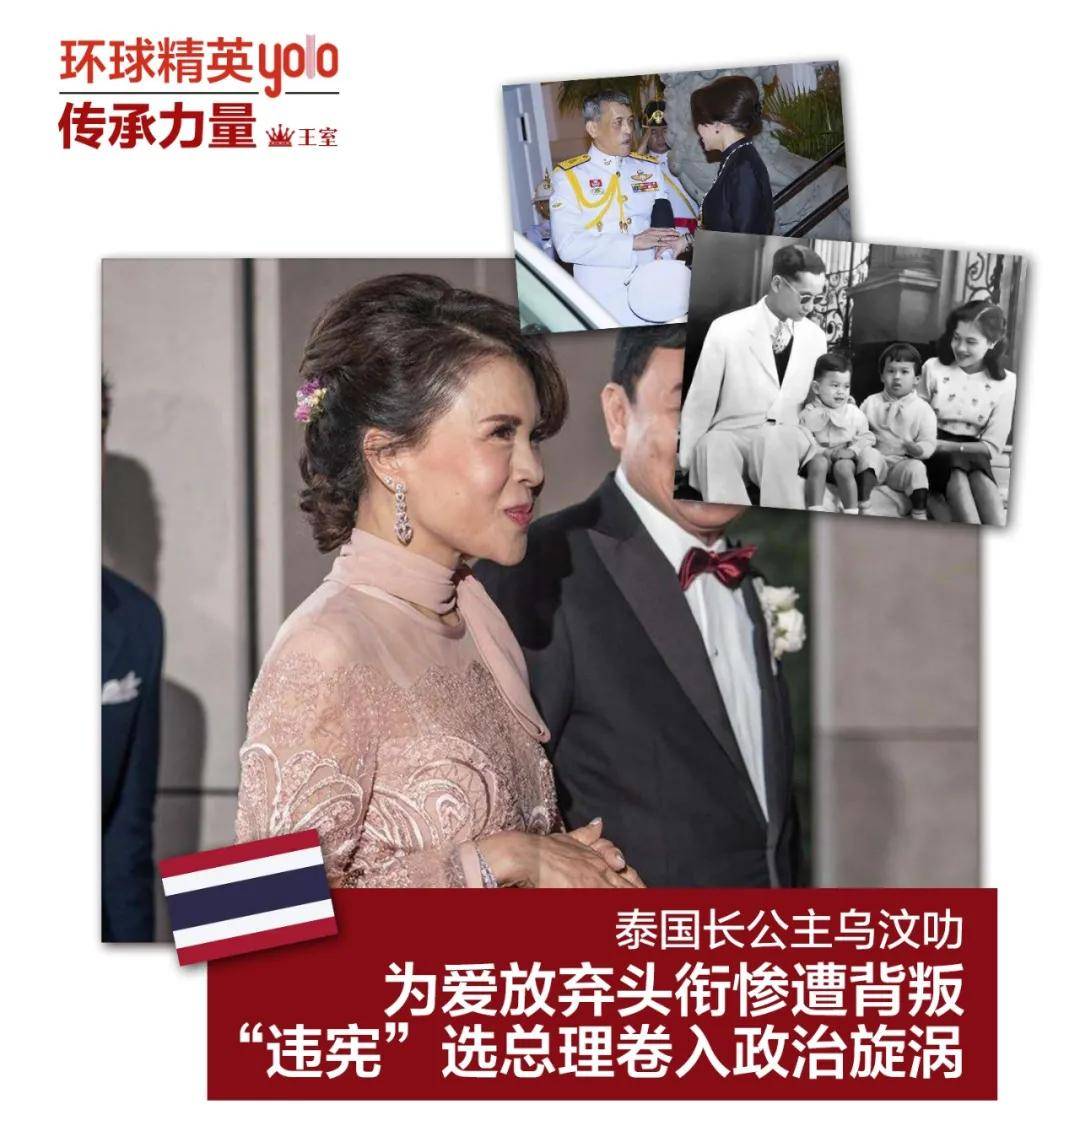 泰国长公主乌汶叻,为爱放弃头衔惨遭背叛,选总理卷入政治旋涡